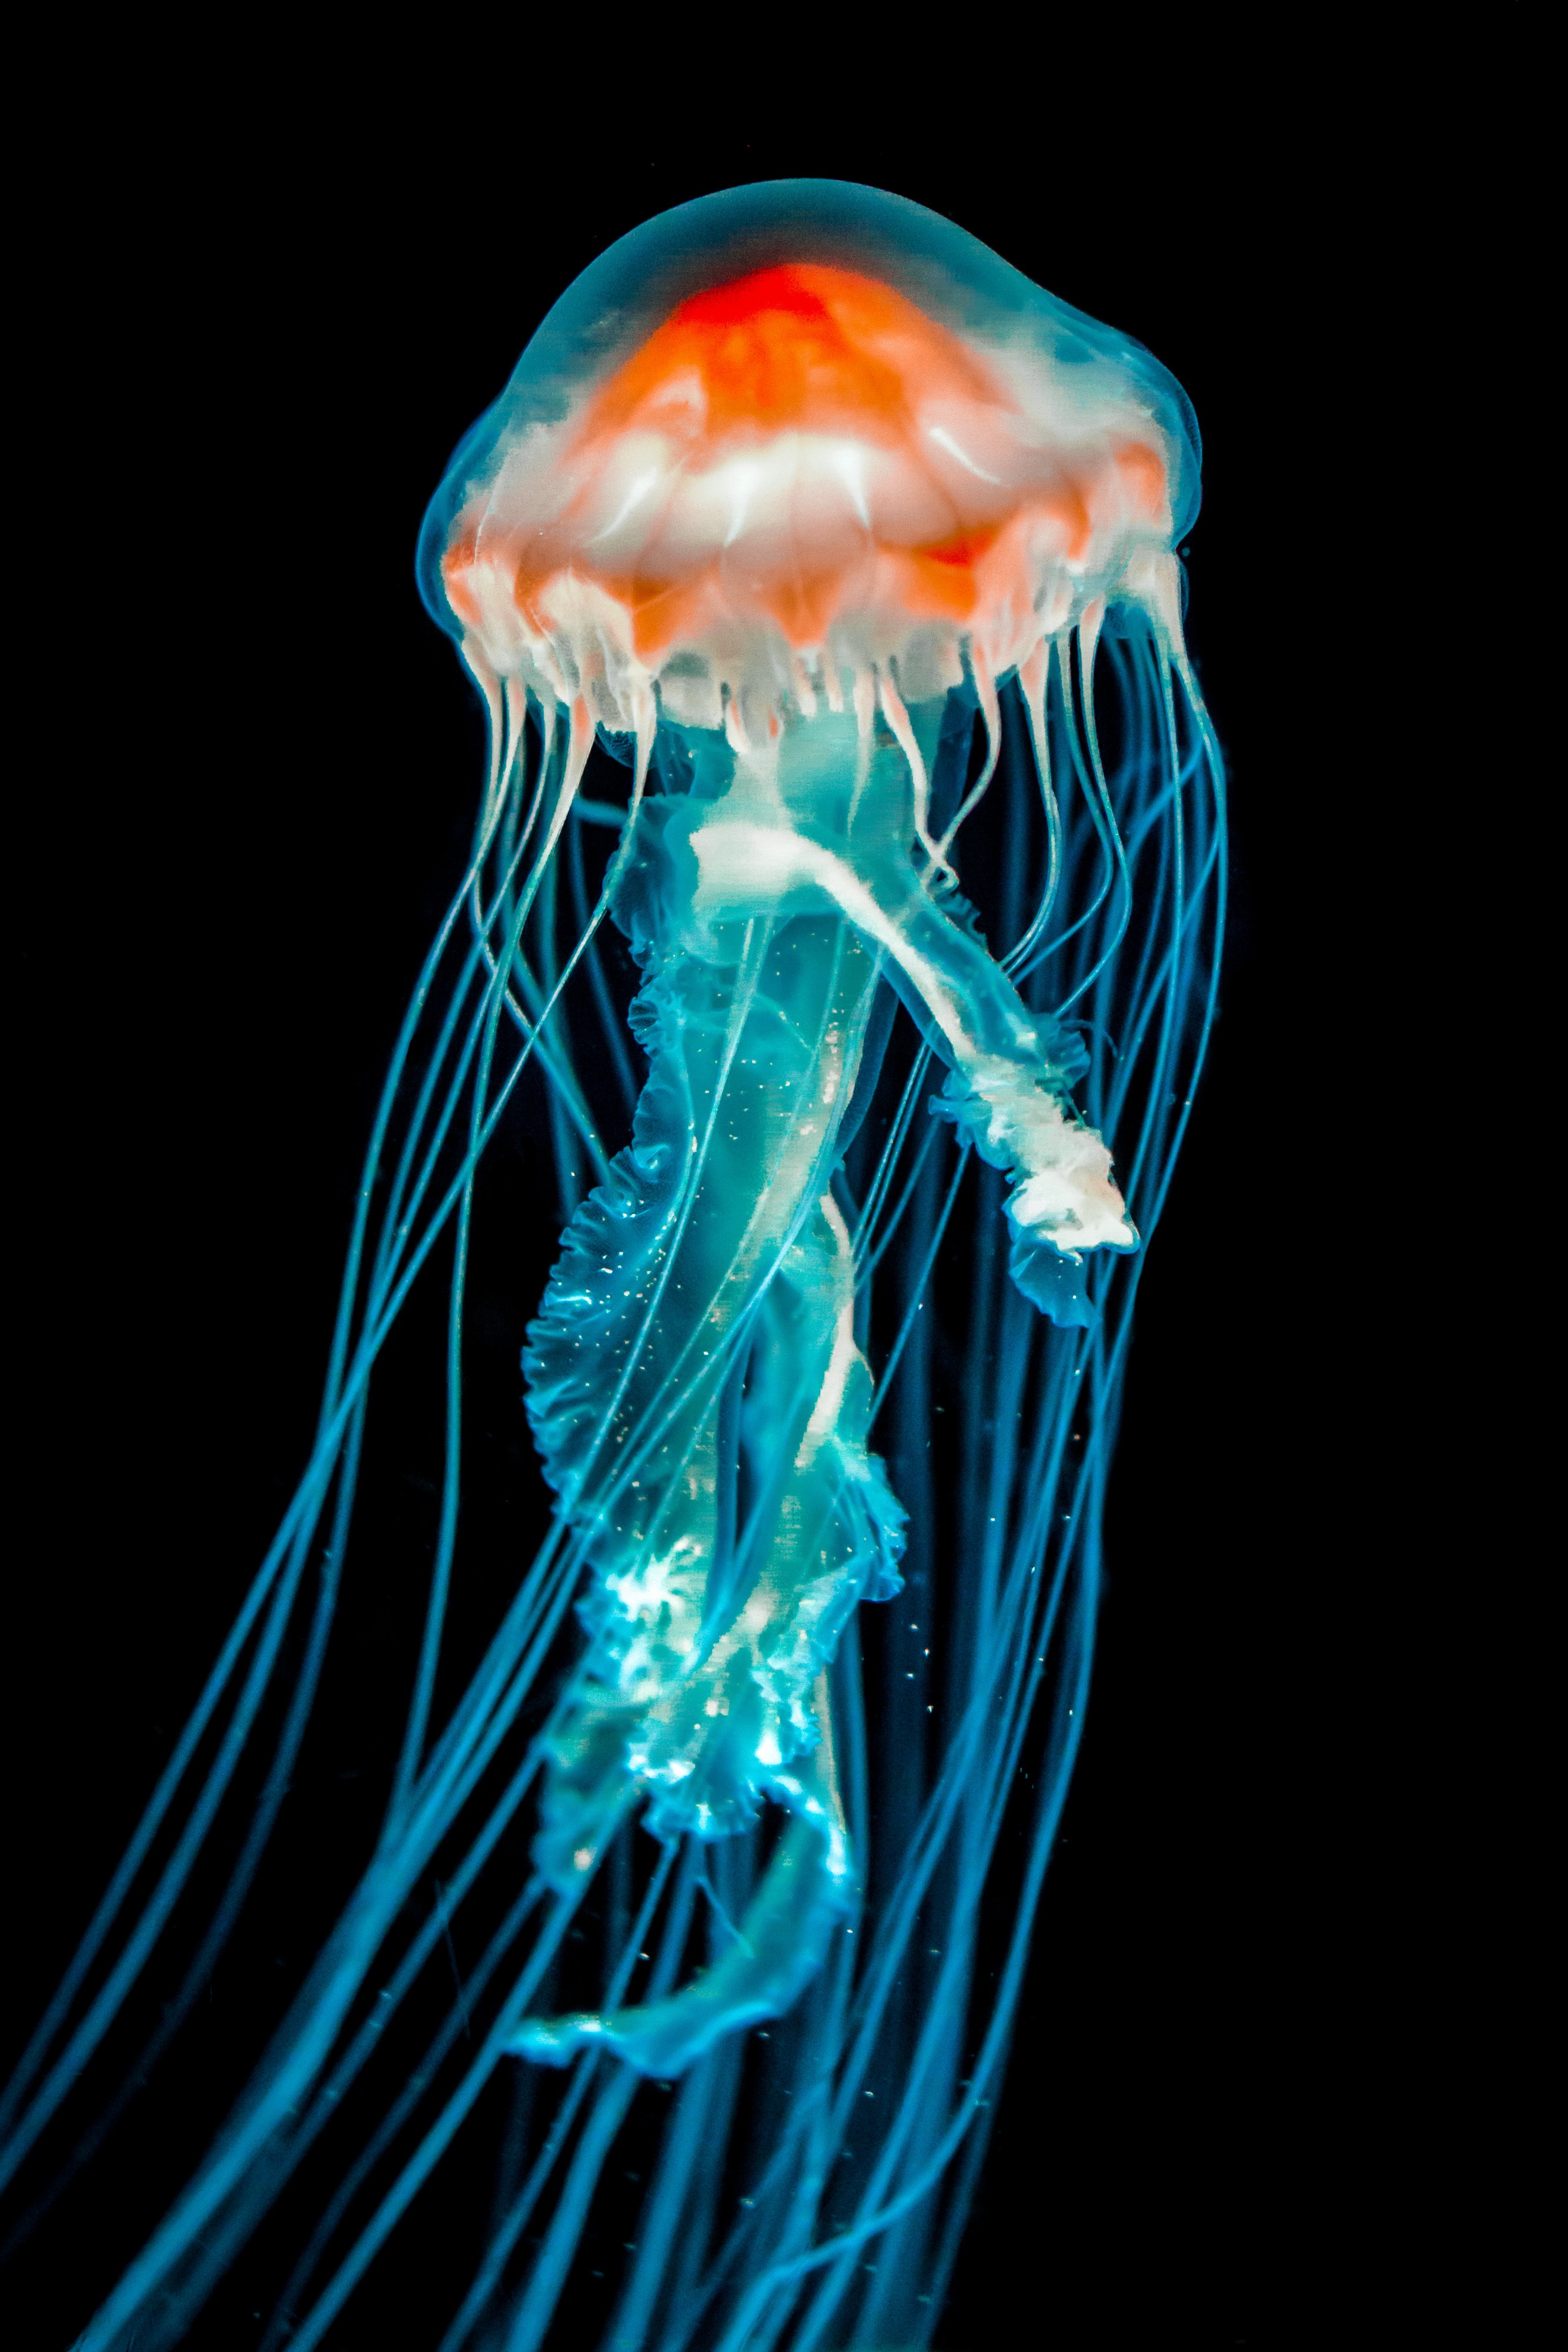 jellyfish, tentacle, dark, animals, black, underwater world HD wallpaper